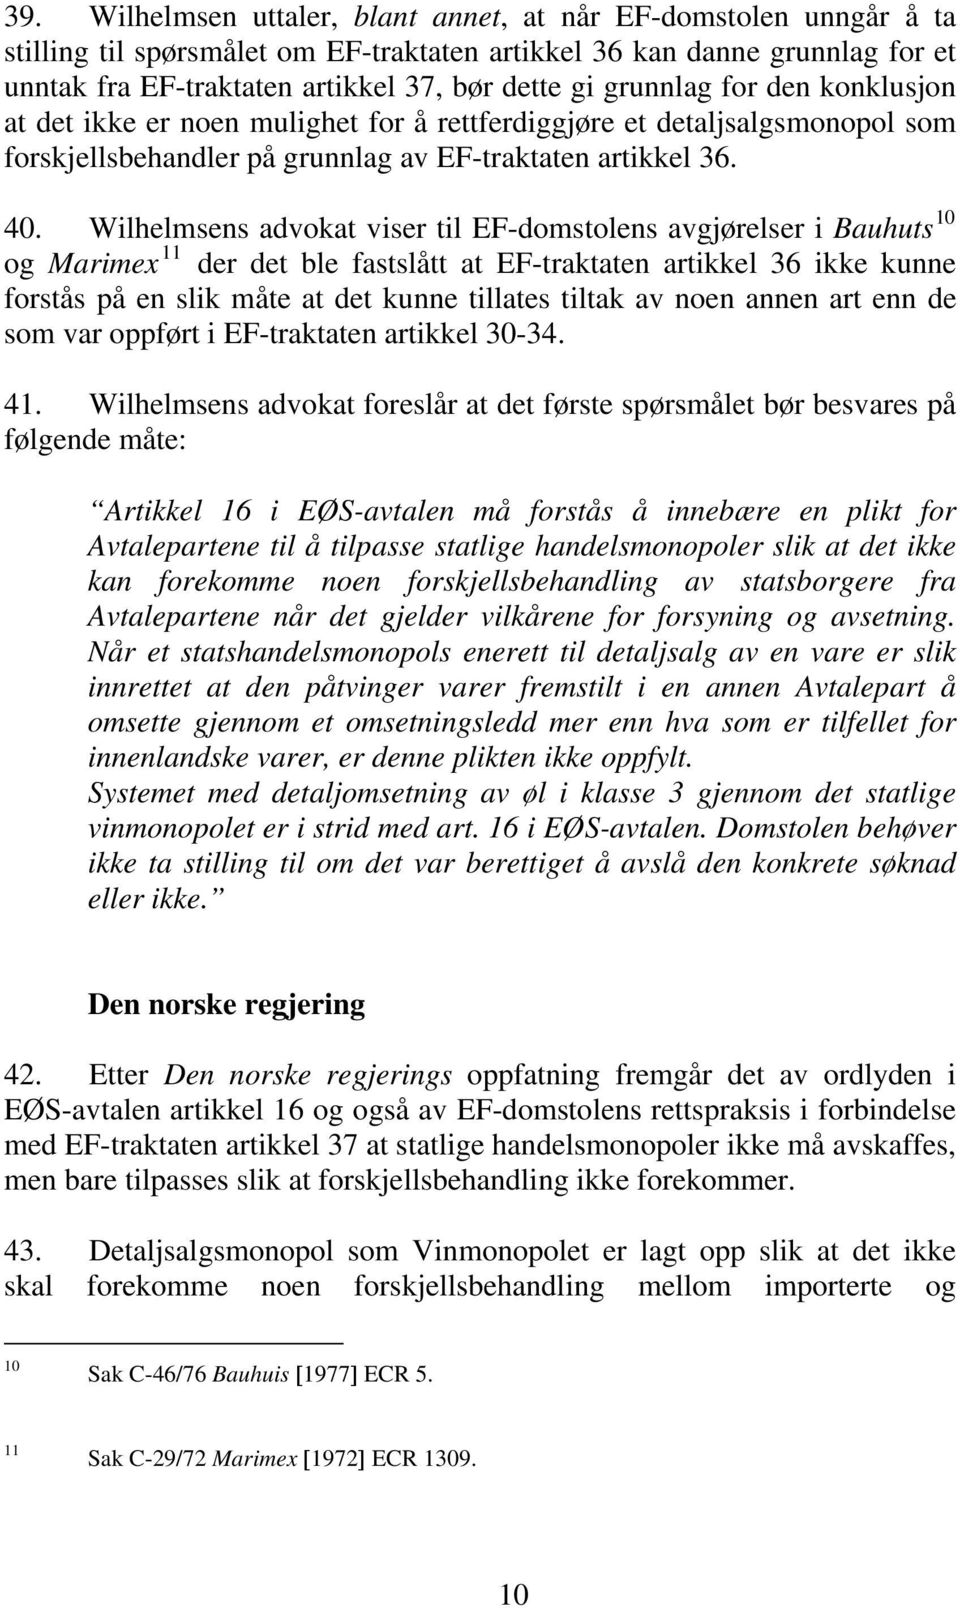 Wilhelmsens advokat viser til EF-domstolens avgjørelser i Bauhuts 10 og Marimex 11 der det ble fastslått at EF-traktaten artikkel 36 ikke kunne forstås på en slik måte at det kunne tillates tiltak av